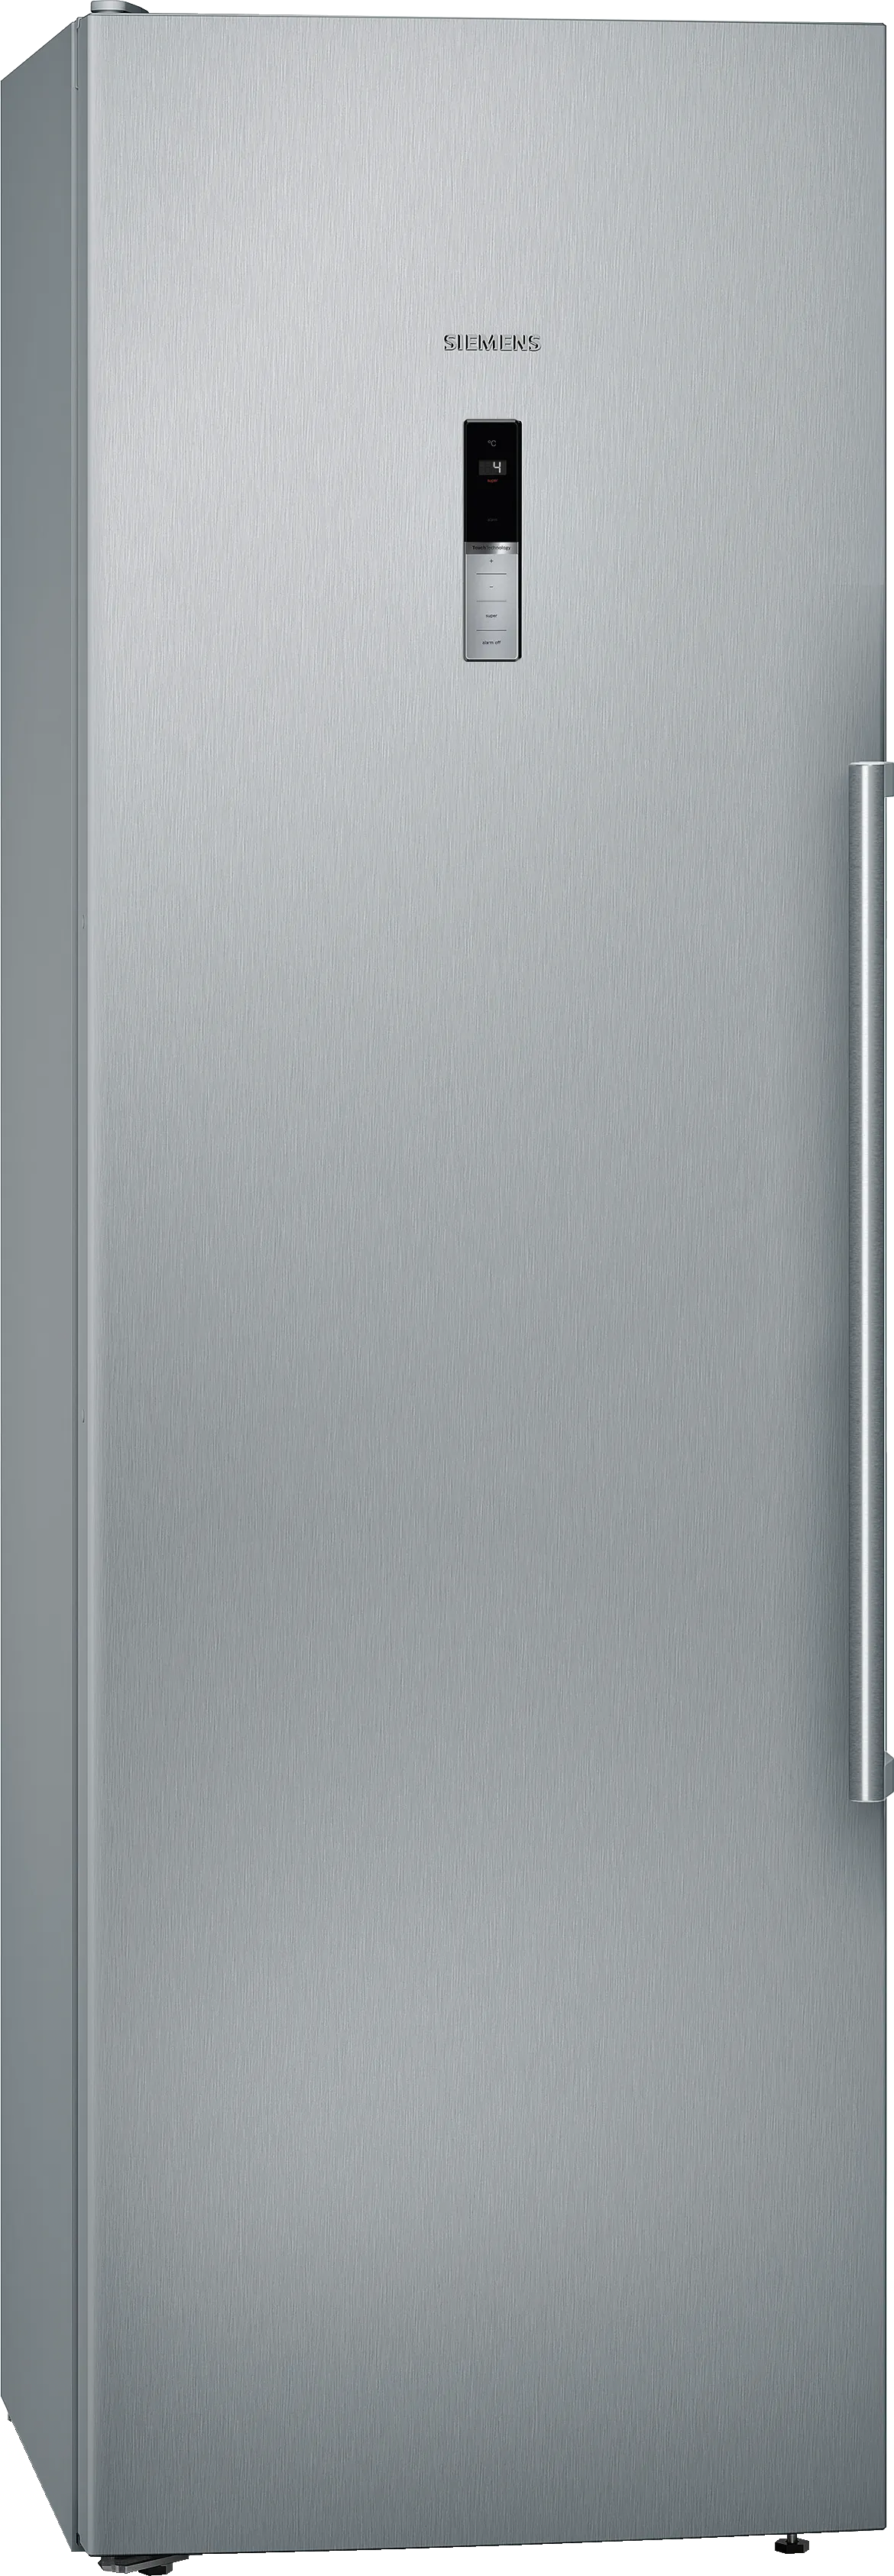 iQ500 Jääkaappi 186 x 60 cm Inox-easyclean 